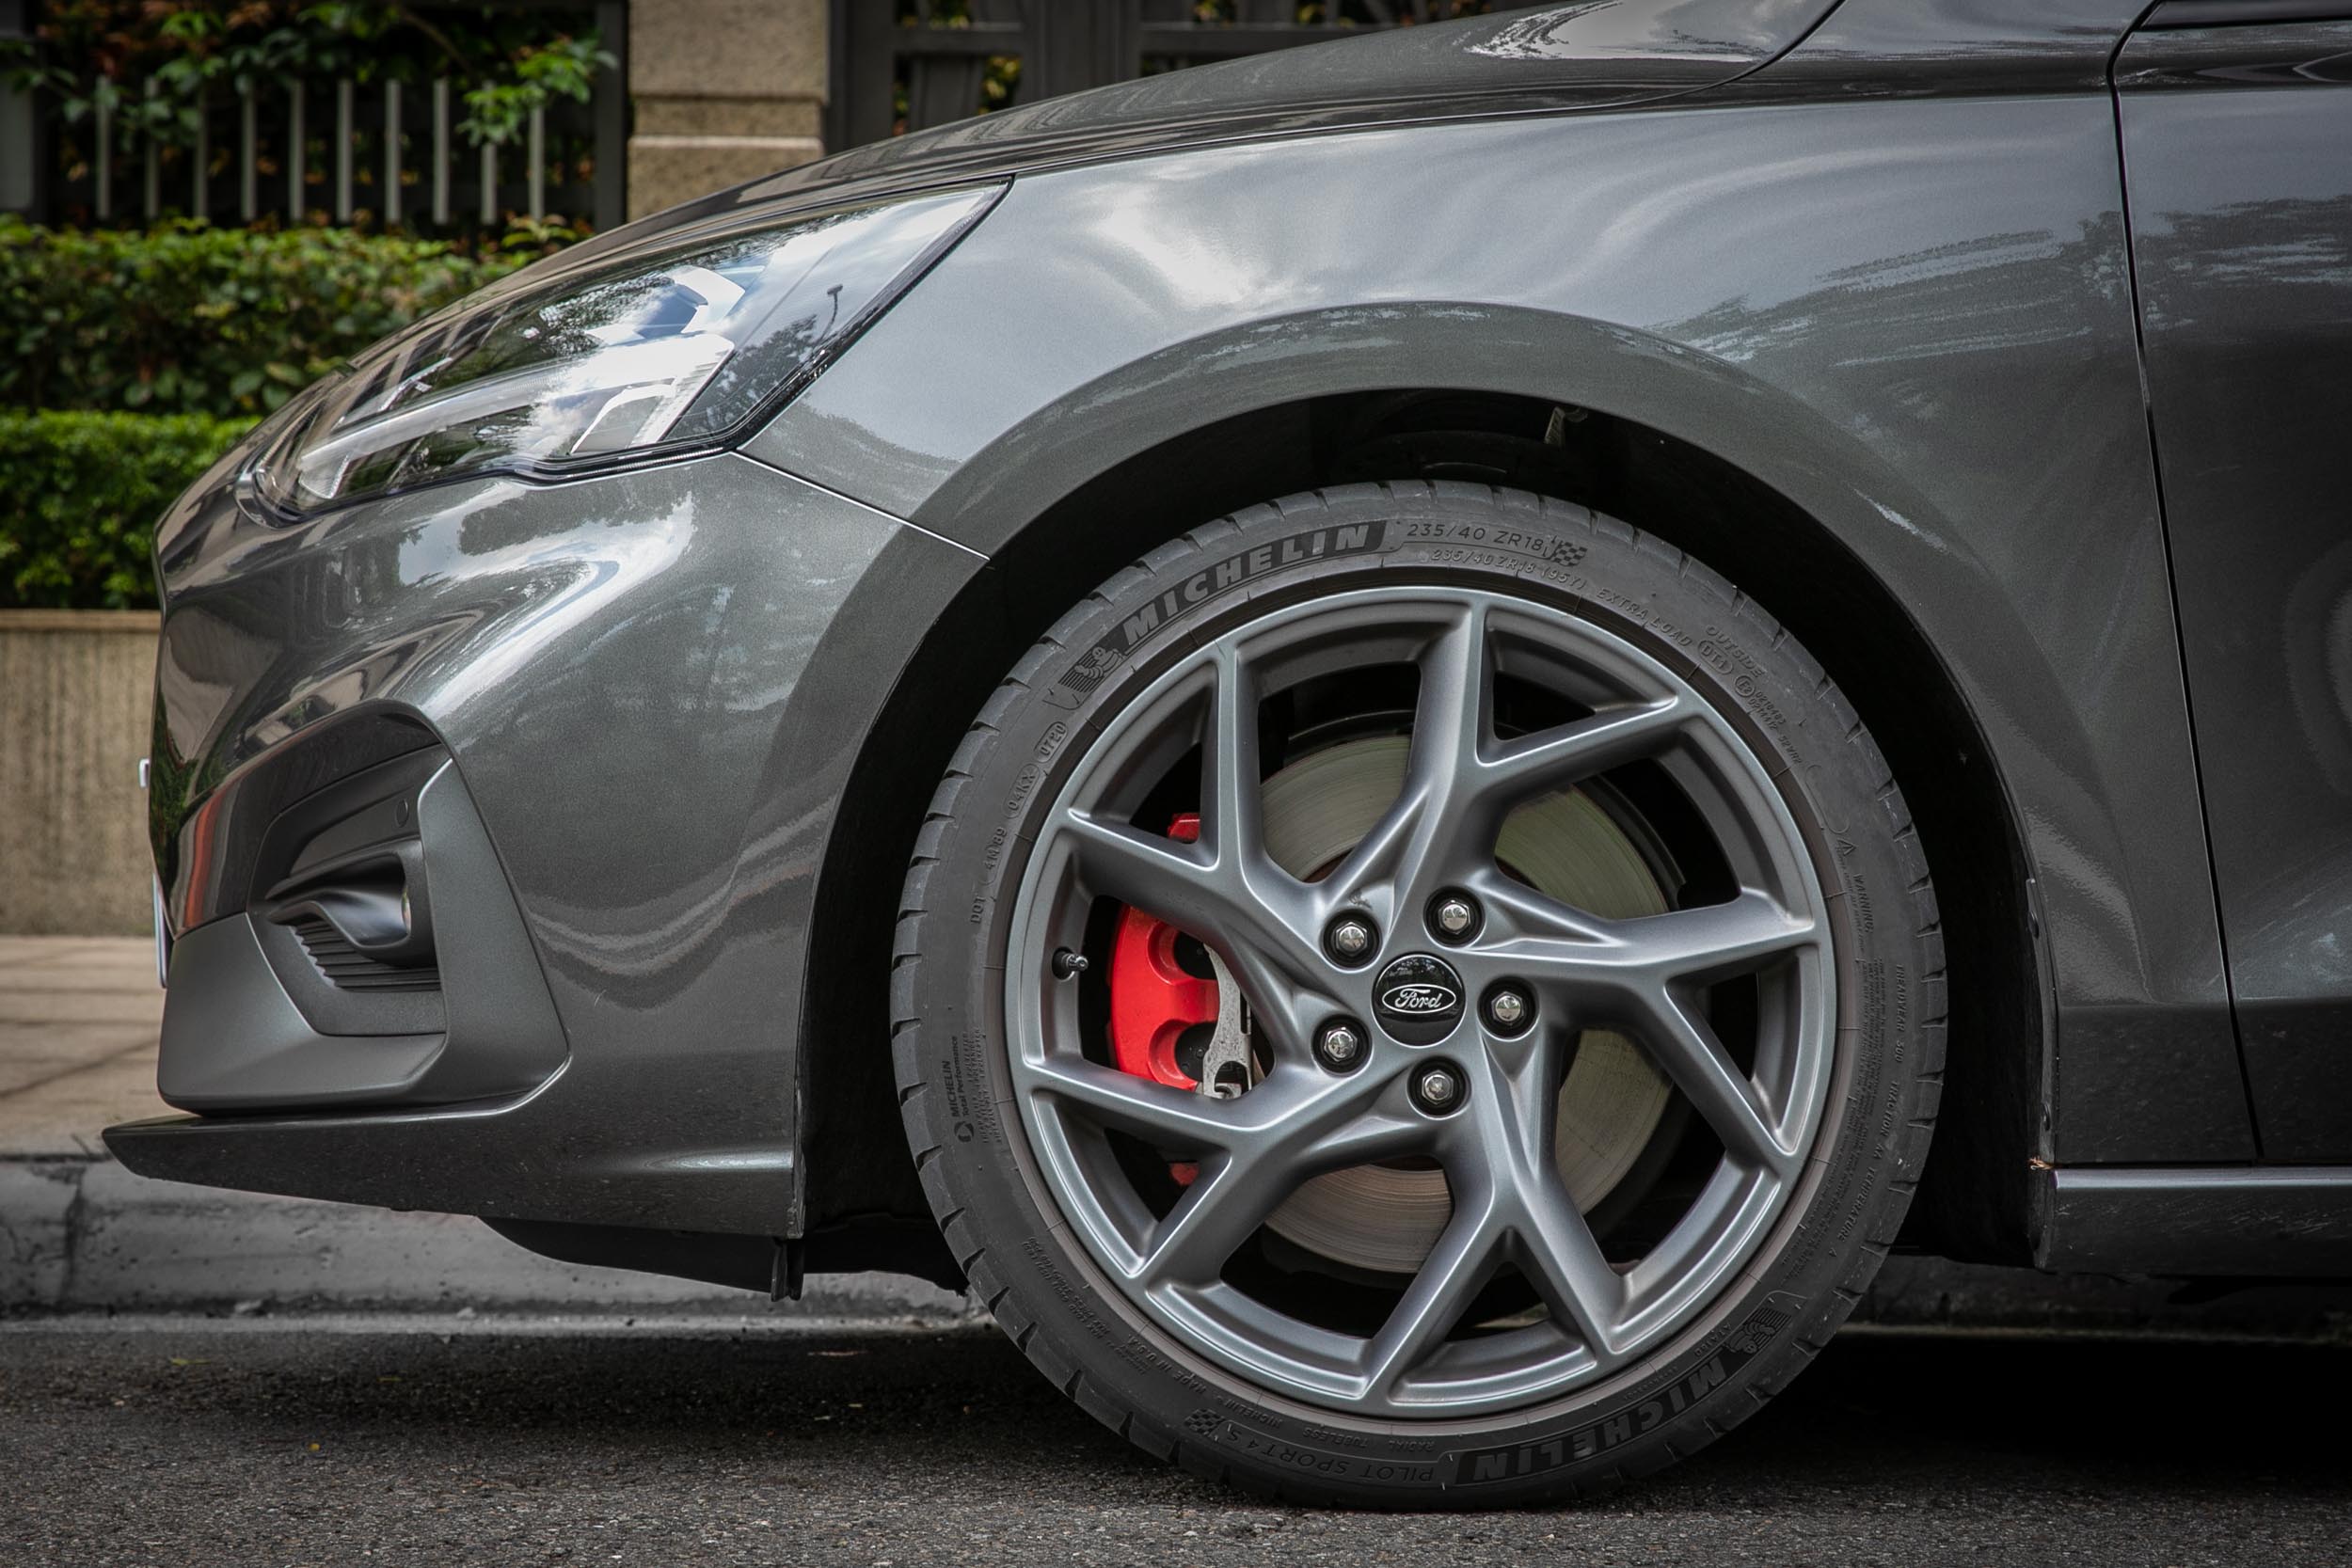 腳下的輪圈從 19 吋縮減至 18 吋，配胎都是 Michelin Pilot Sport 4S 性能胎，但尺碼從 235/35ZR19 改為 235/40ZR18。